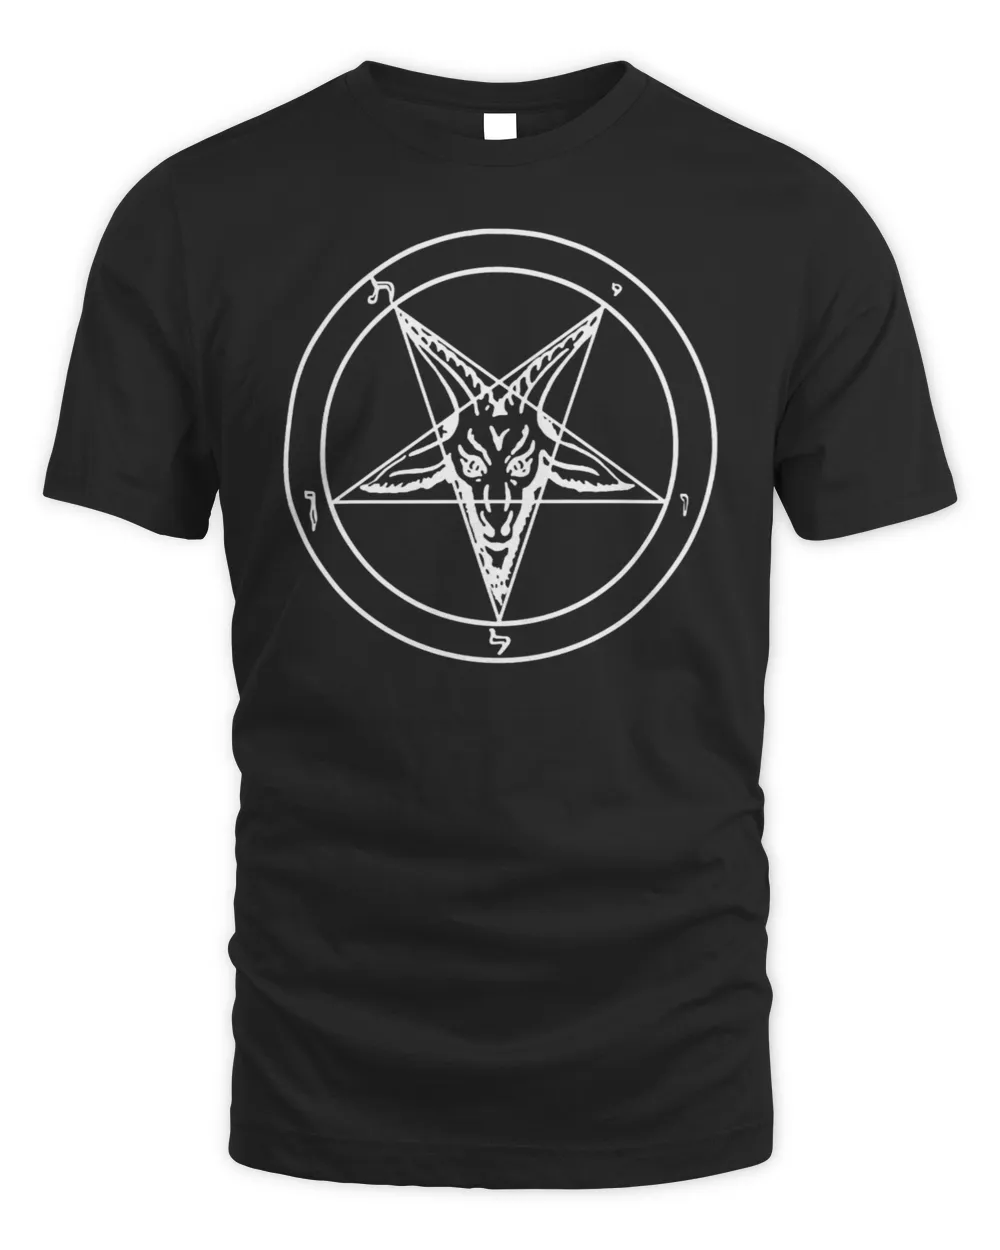 Sigil Baphomet Pentagram Occult Satanic Goat